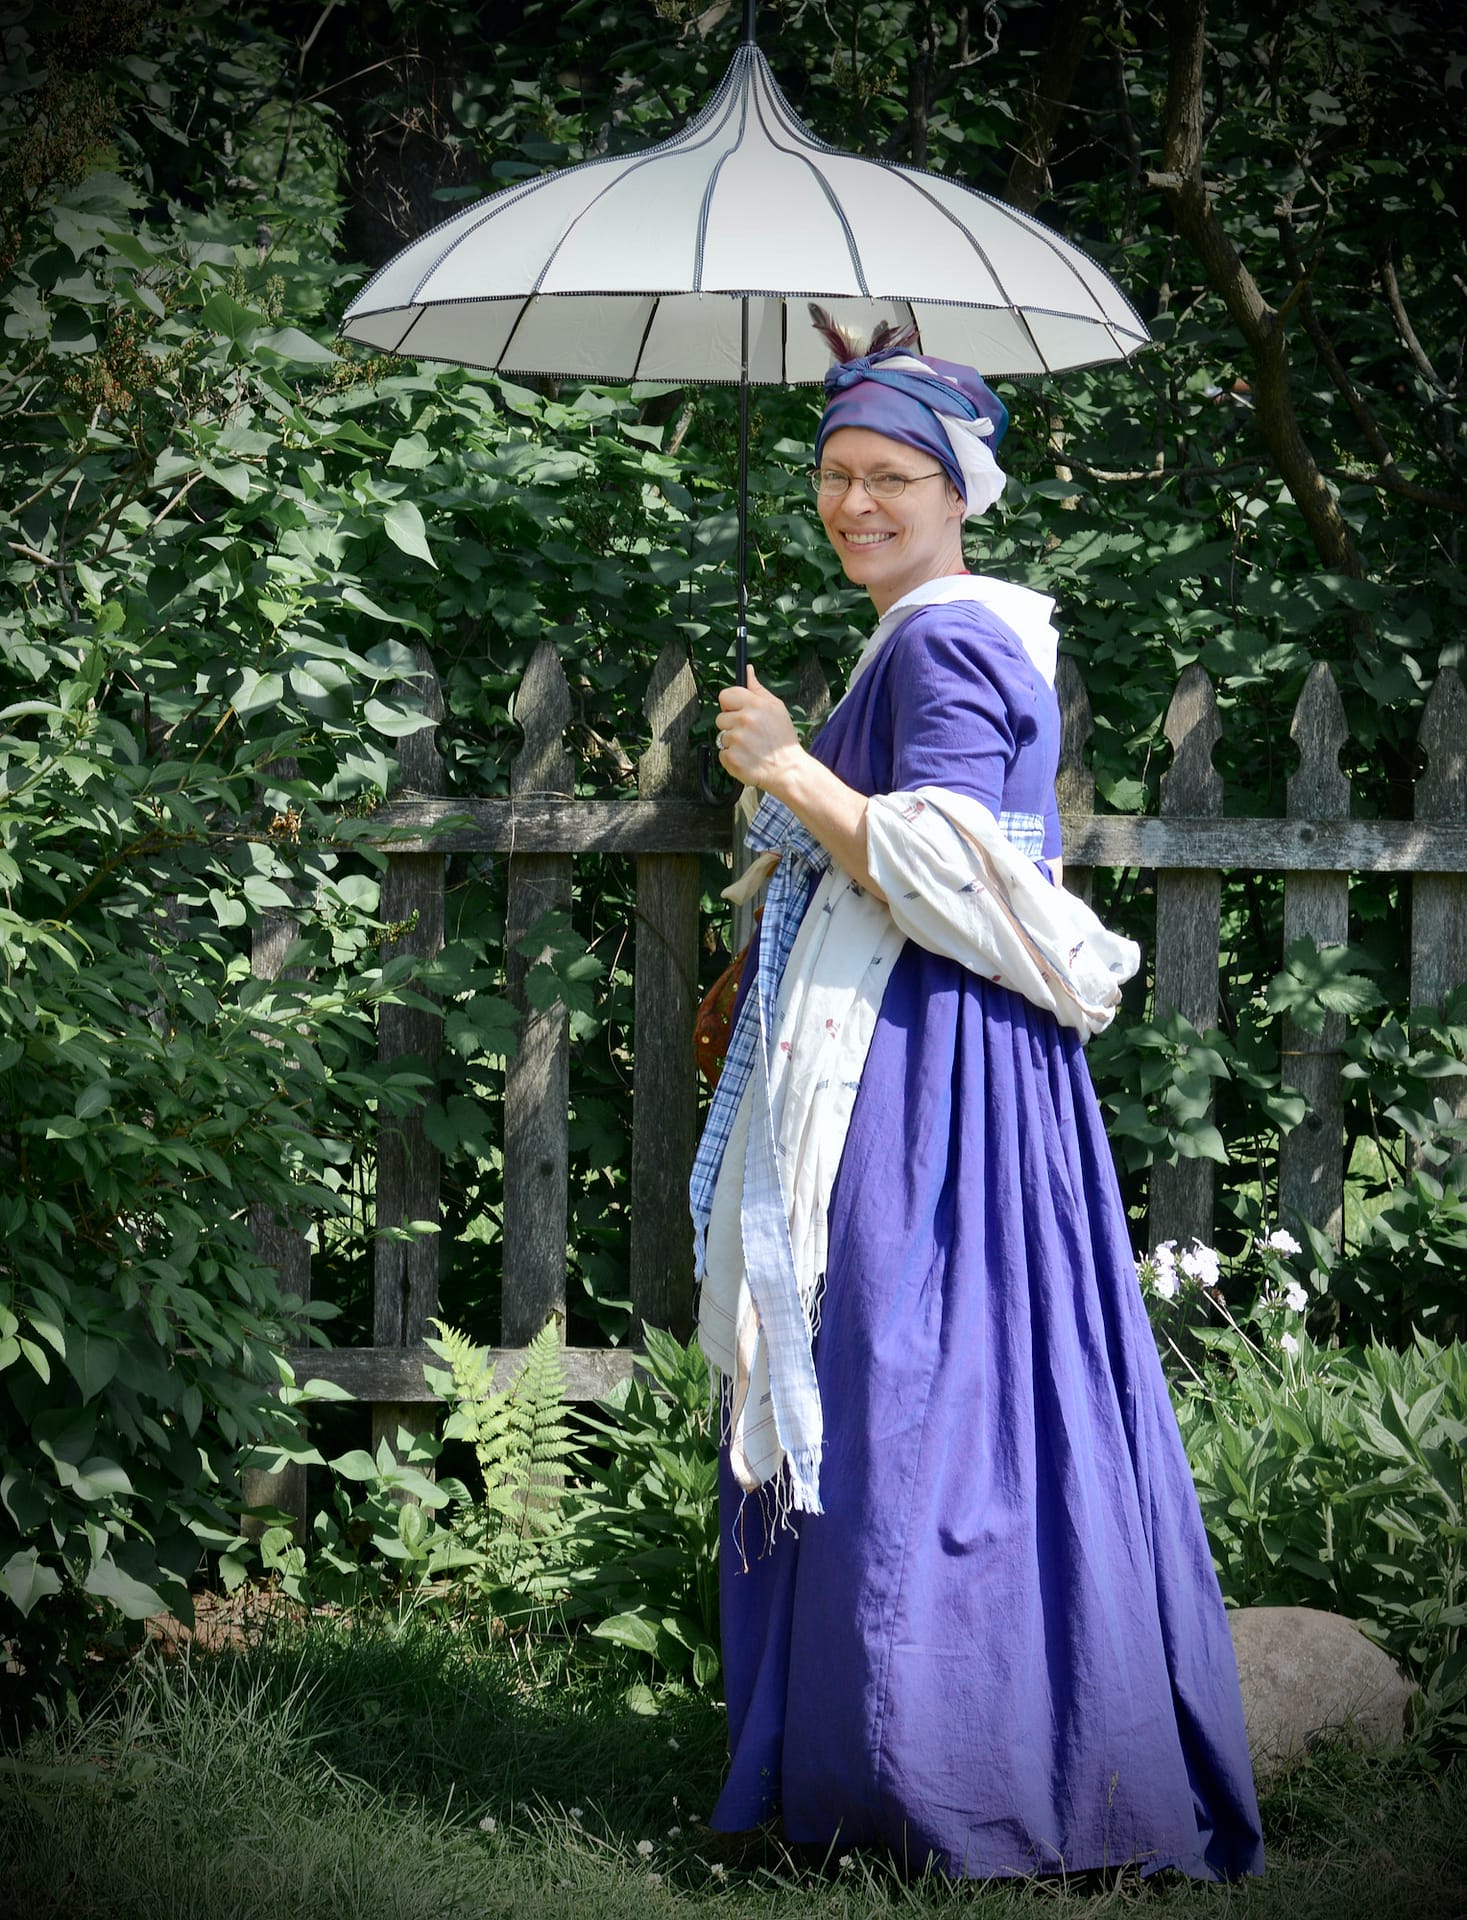 Building A Jane Austen/Early Regency Era Wardrobe